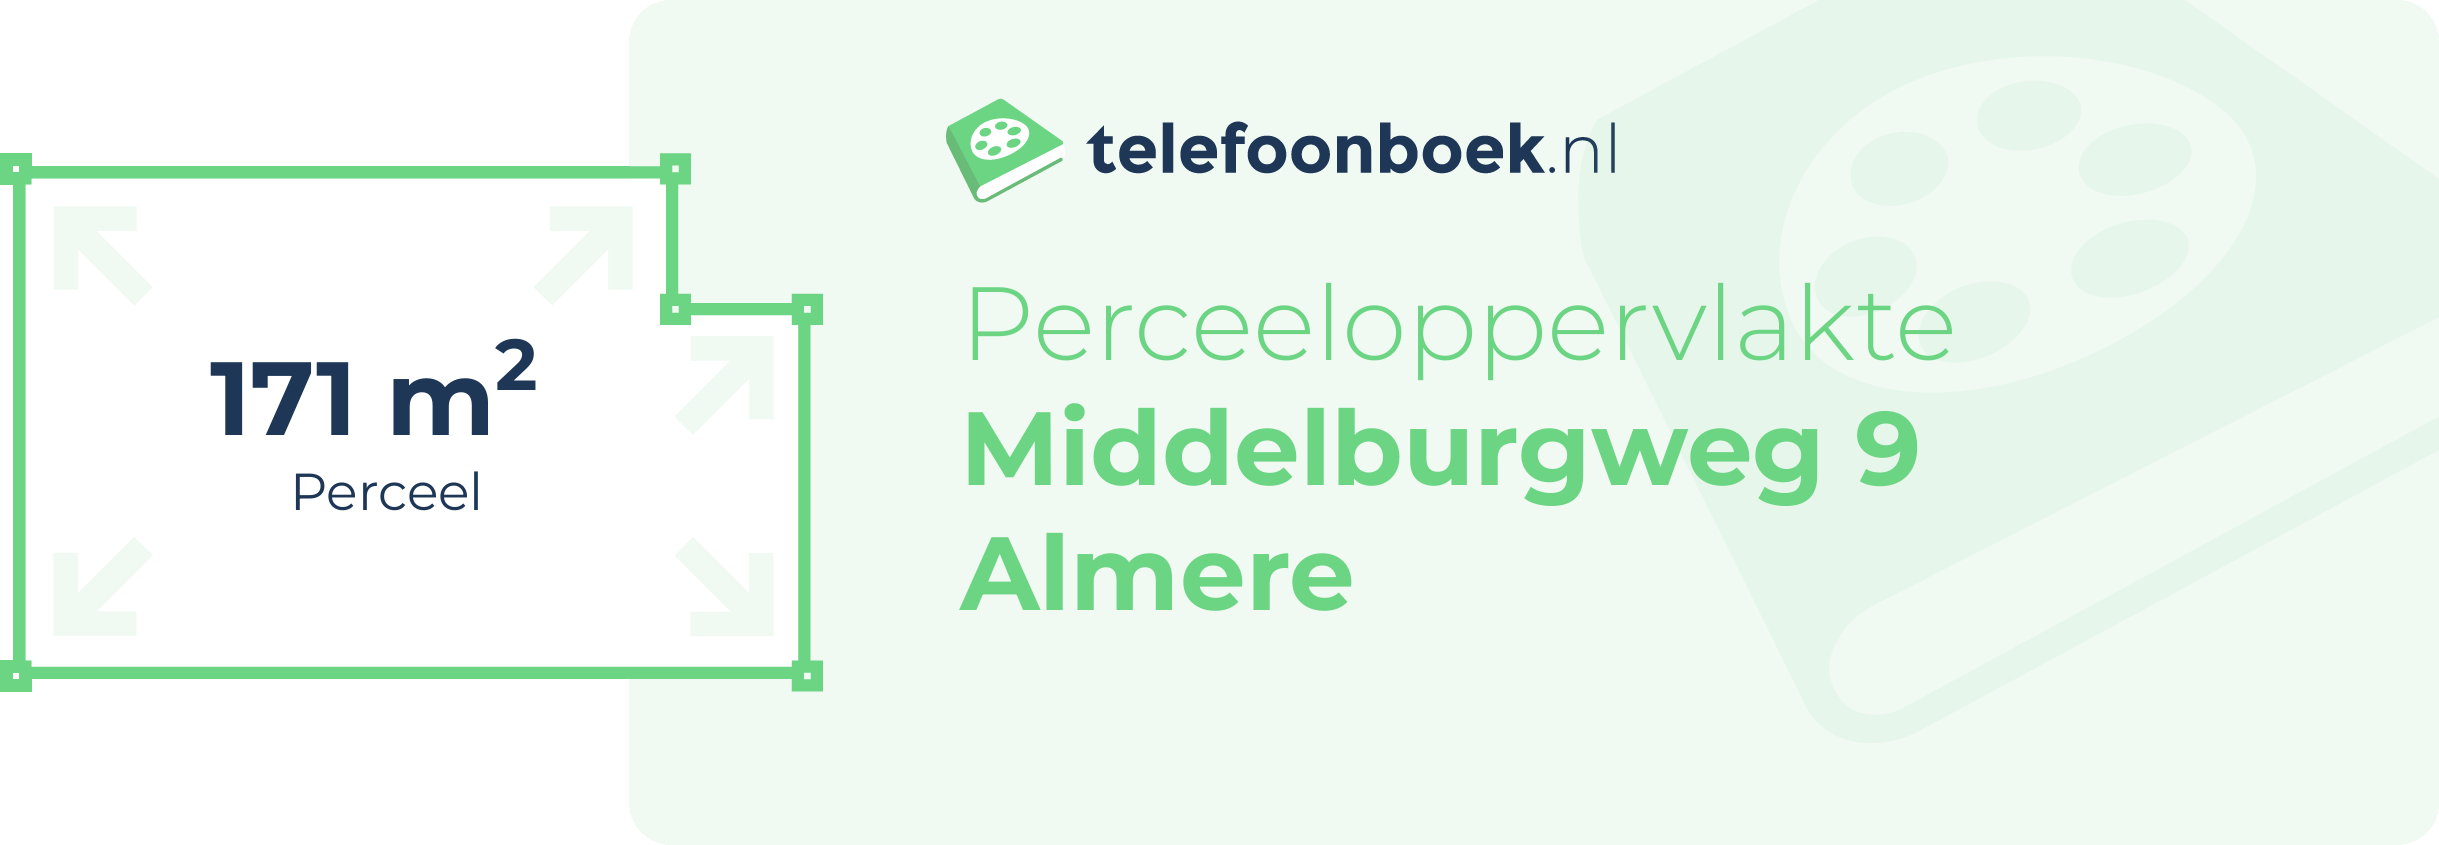 Perceeloppervlakte Middelburgweg 9 Almere